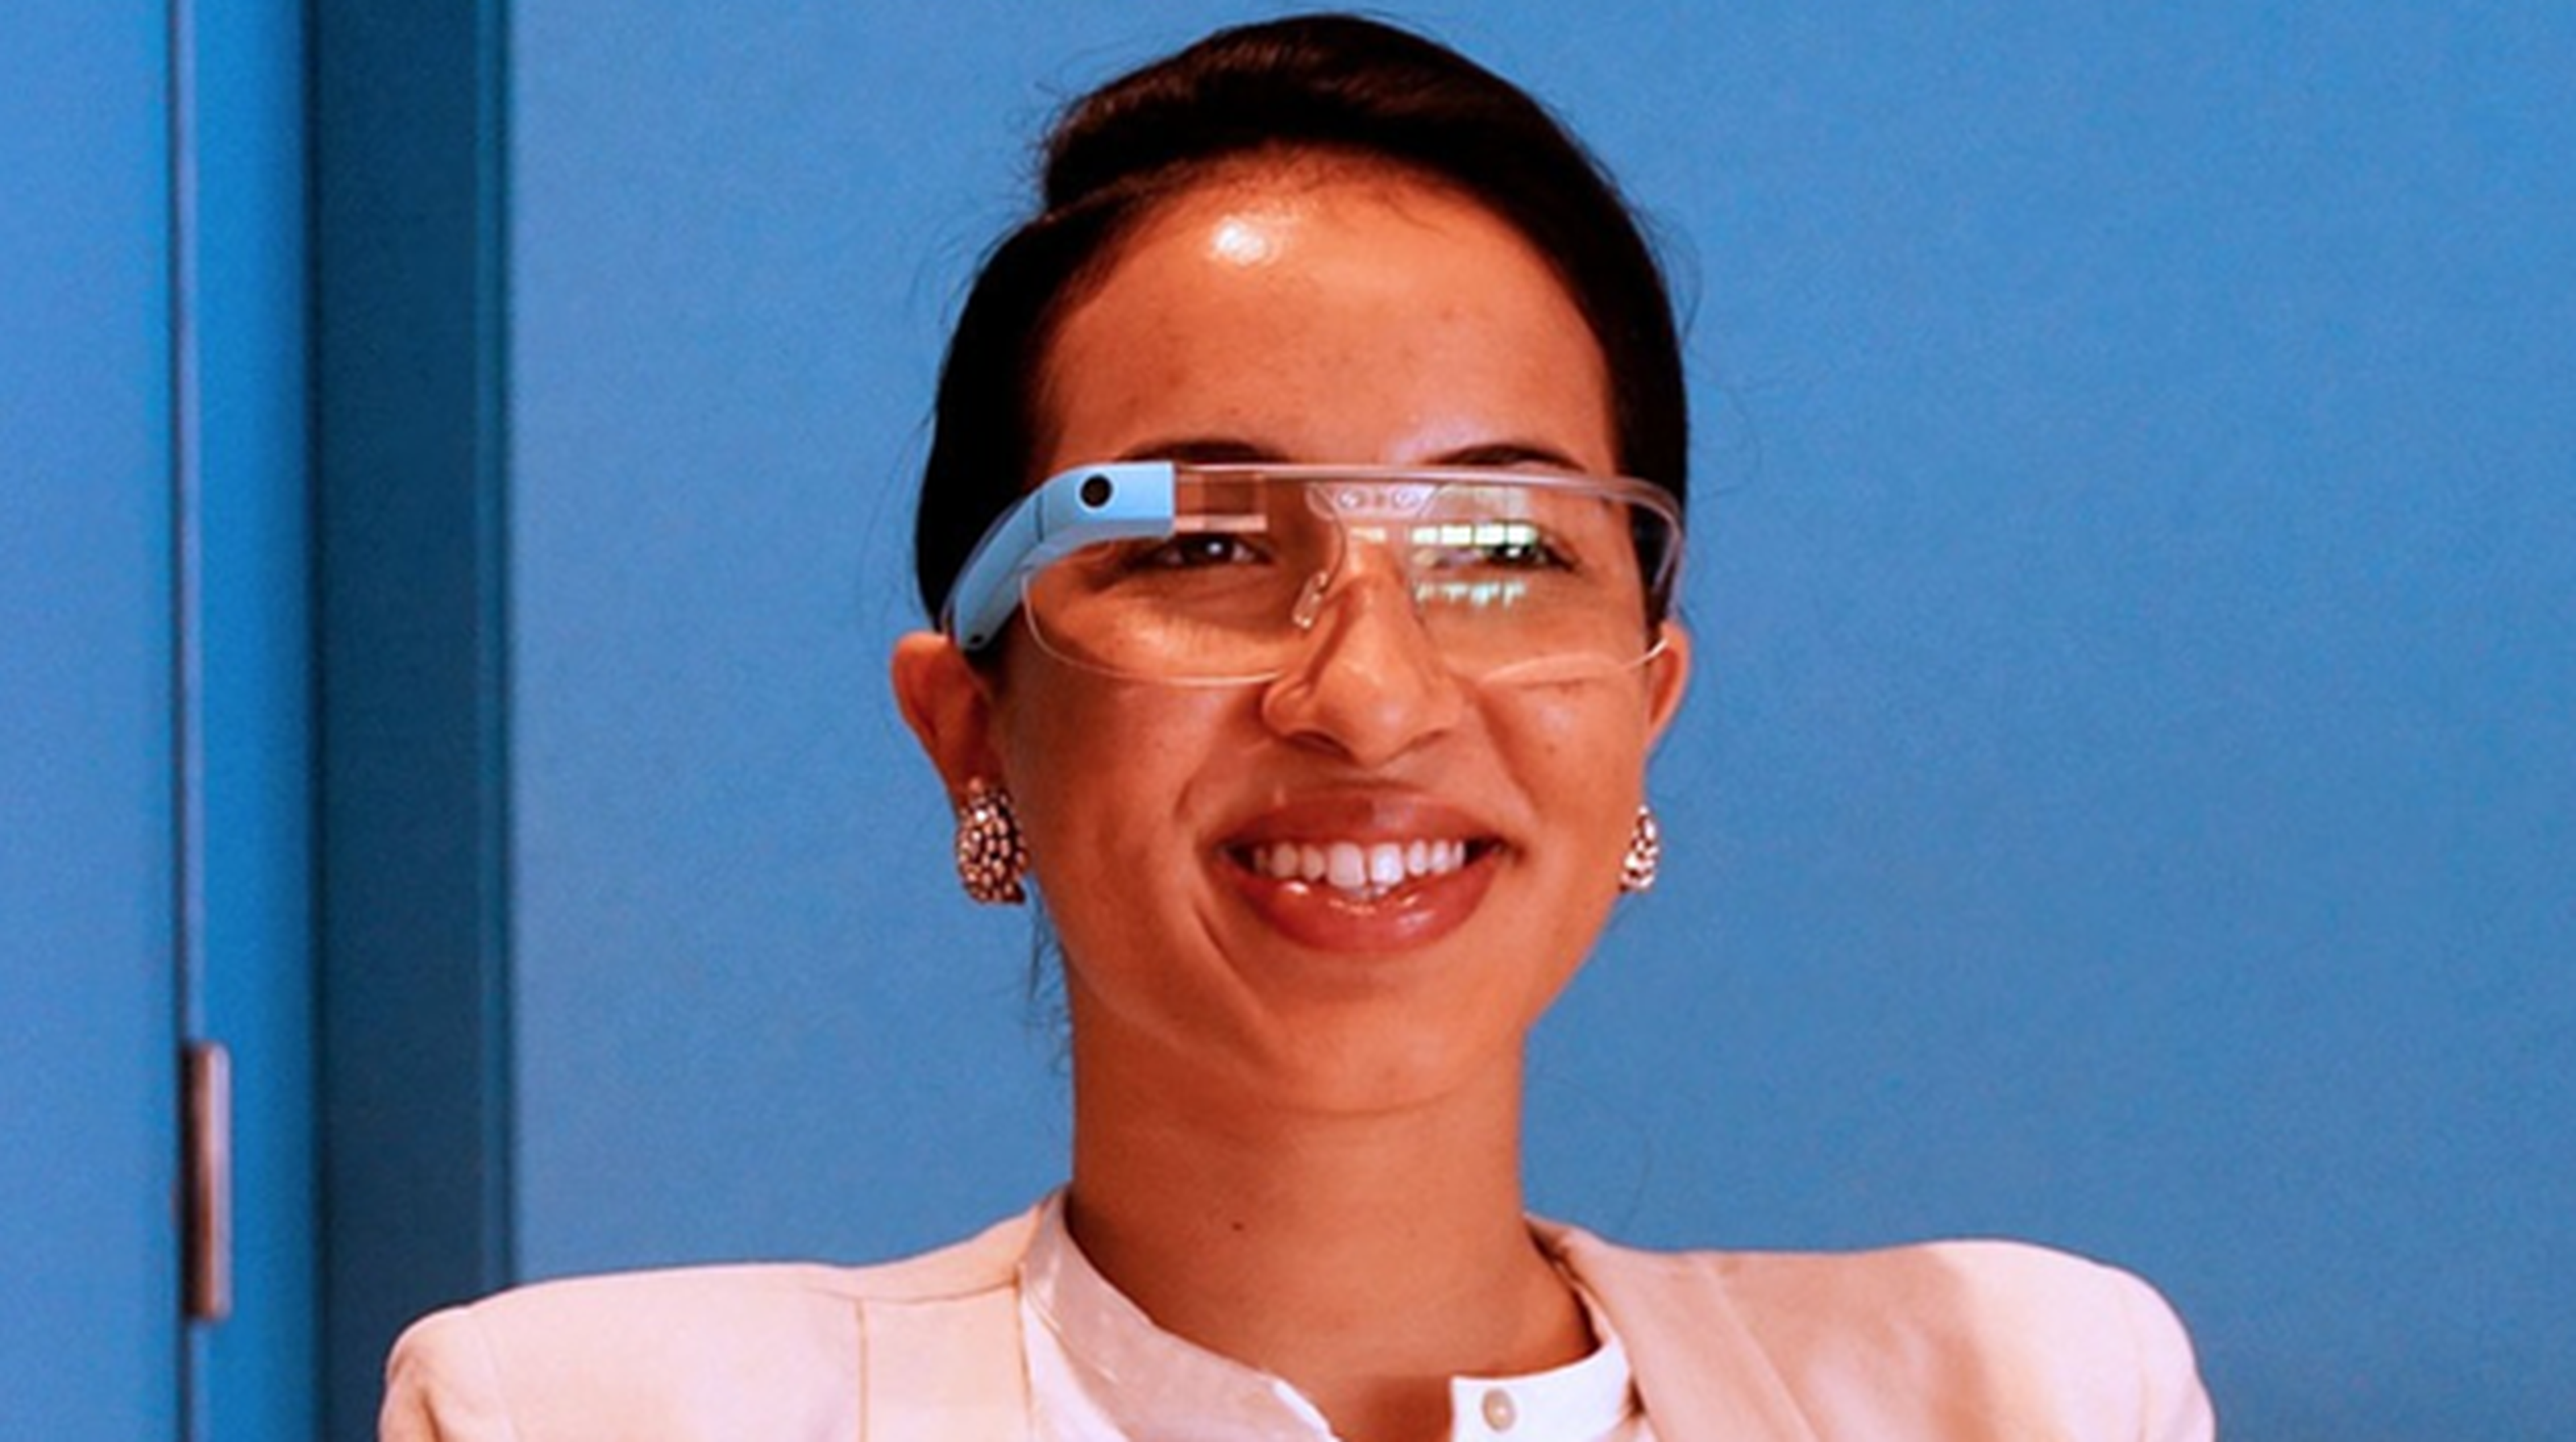 Lentes Google Glass